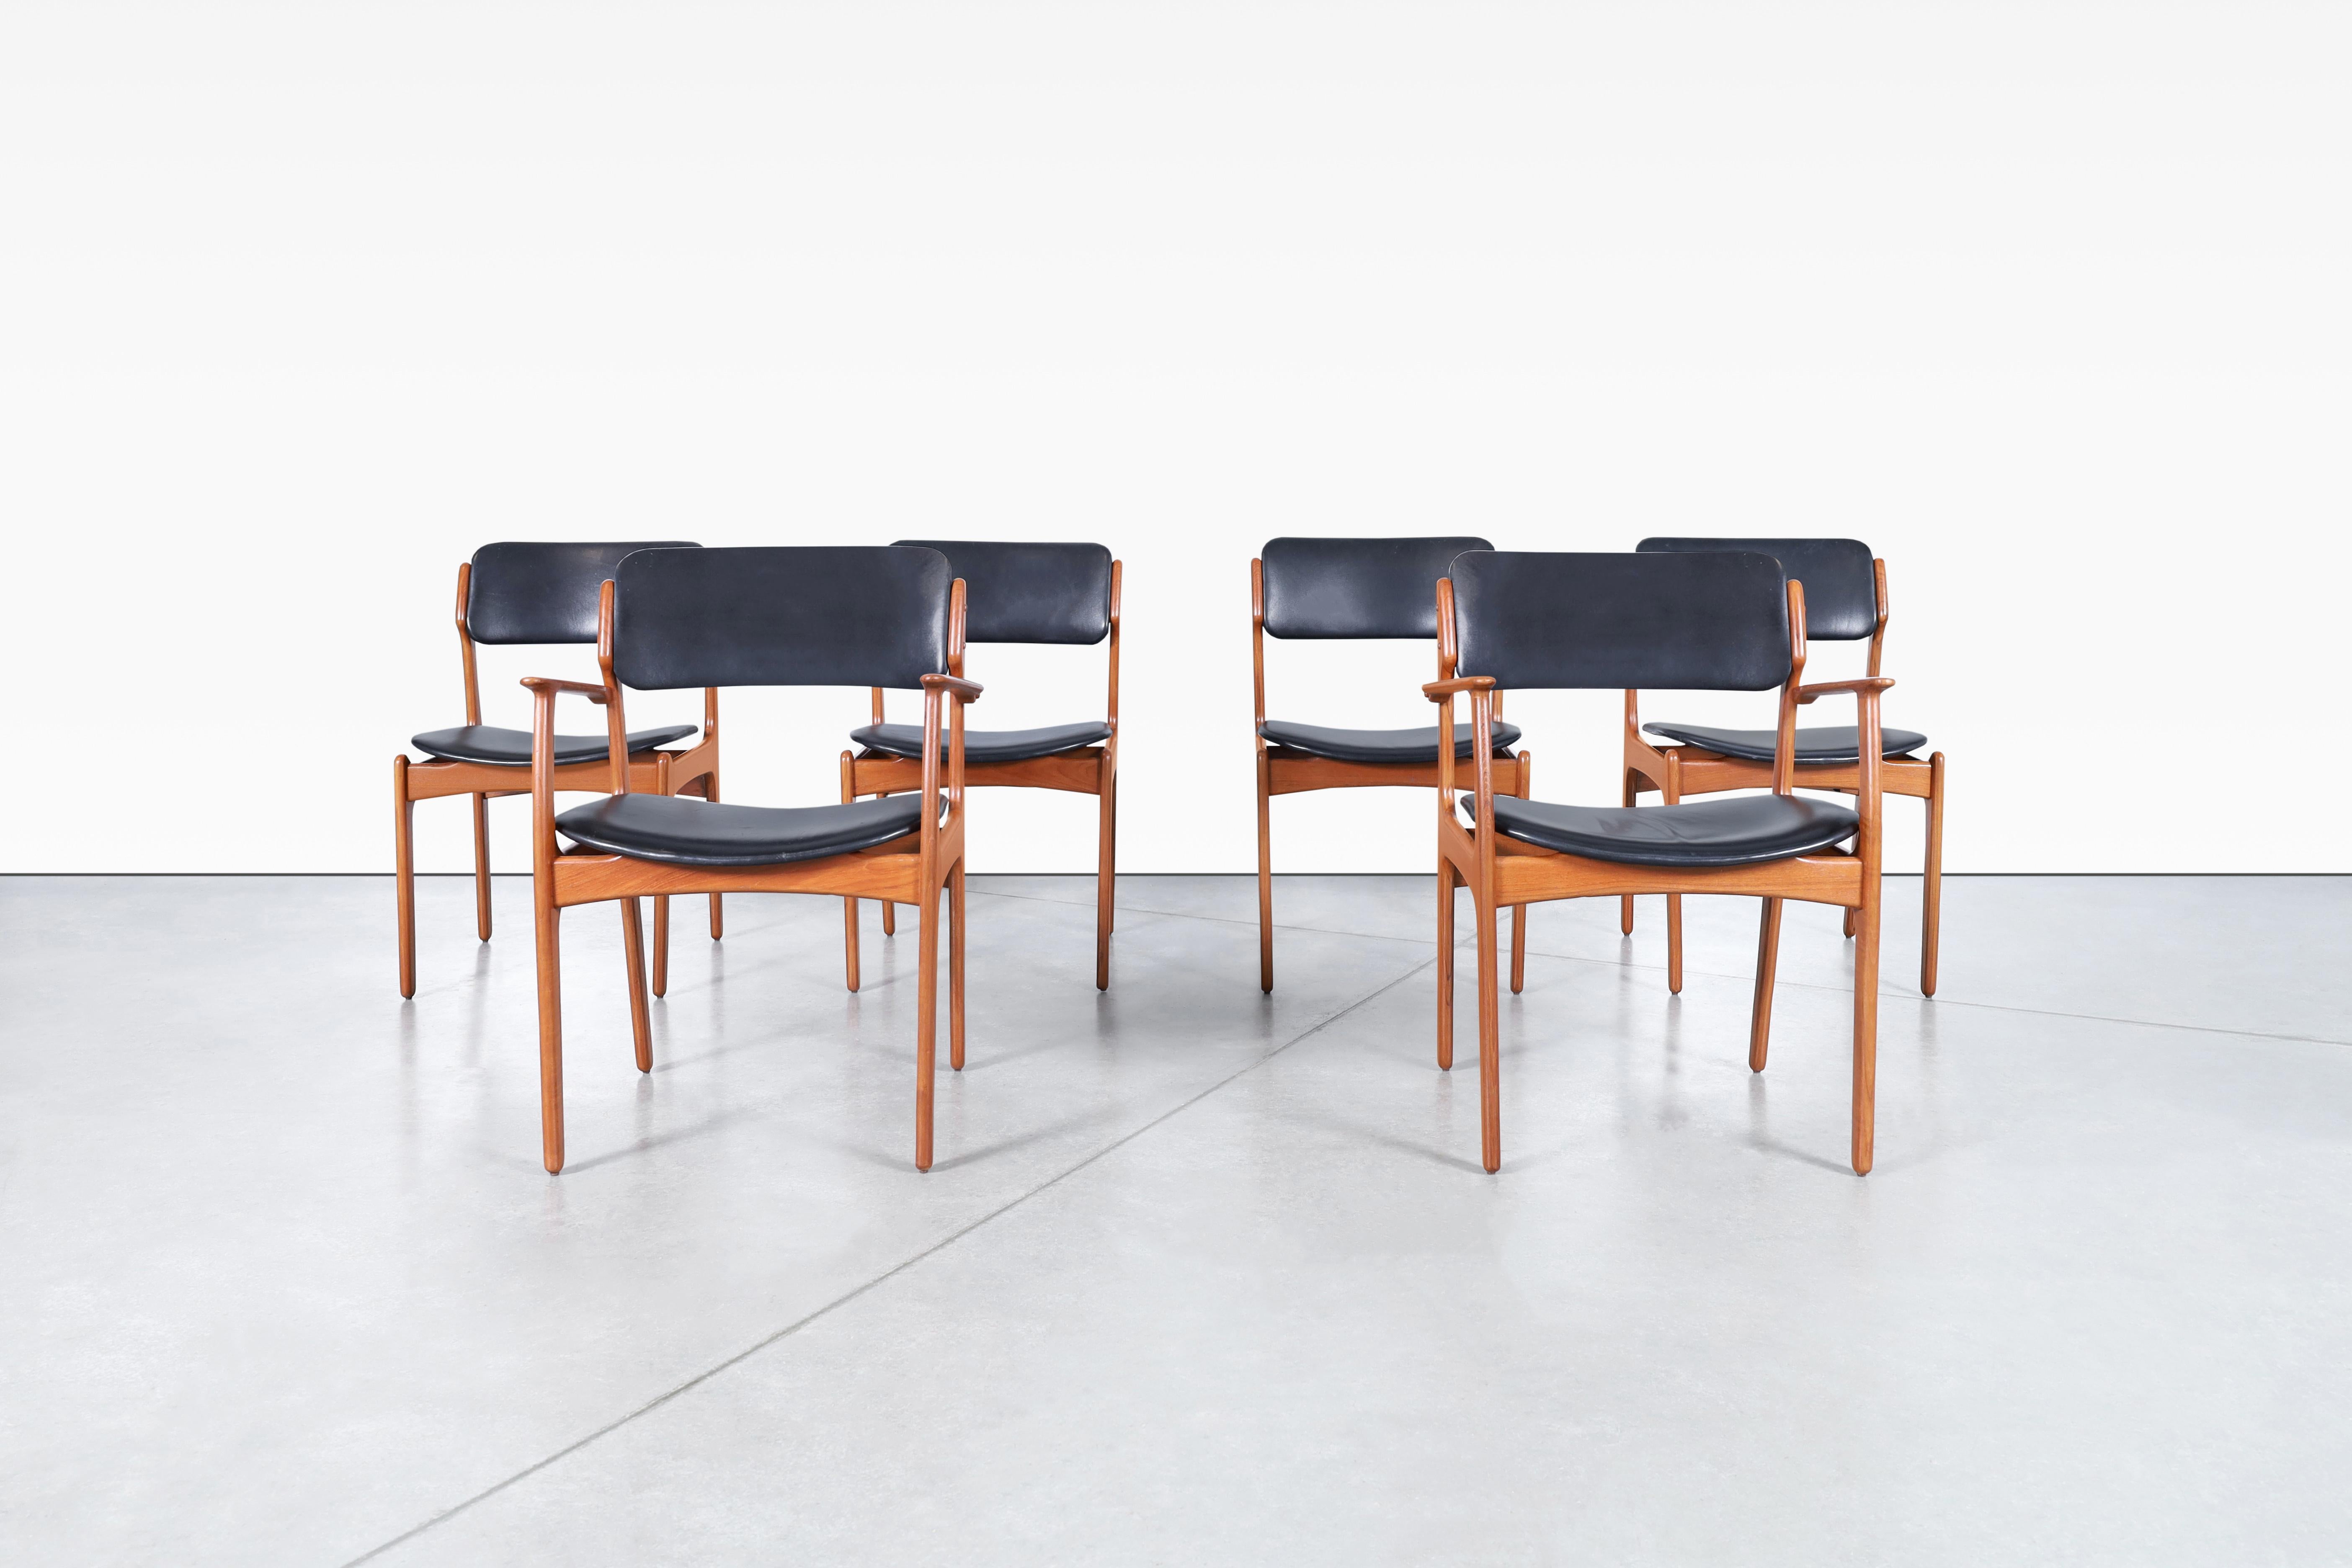 Möchten Sie Ihren Essbereich mit einem Hauch von Mid-Century-Charme aufwerten? Diese kultigen Esszimmerstühle wurden von Erik Buch für Oddense Maskinsnedkeri in Dänemark entworfen. Diese Stühle, die als Modell OD-49 bekannt sind, bestehen aus zwei